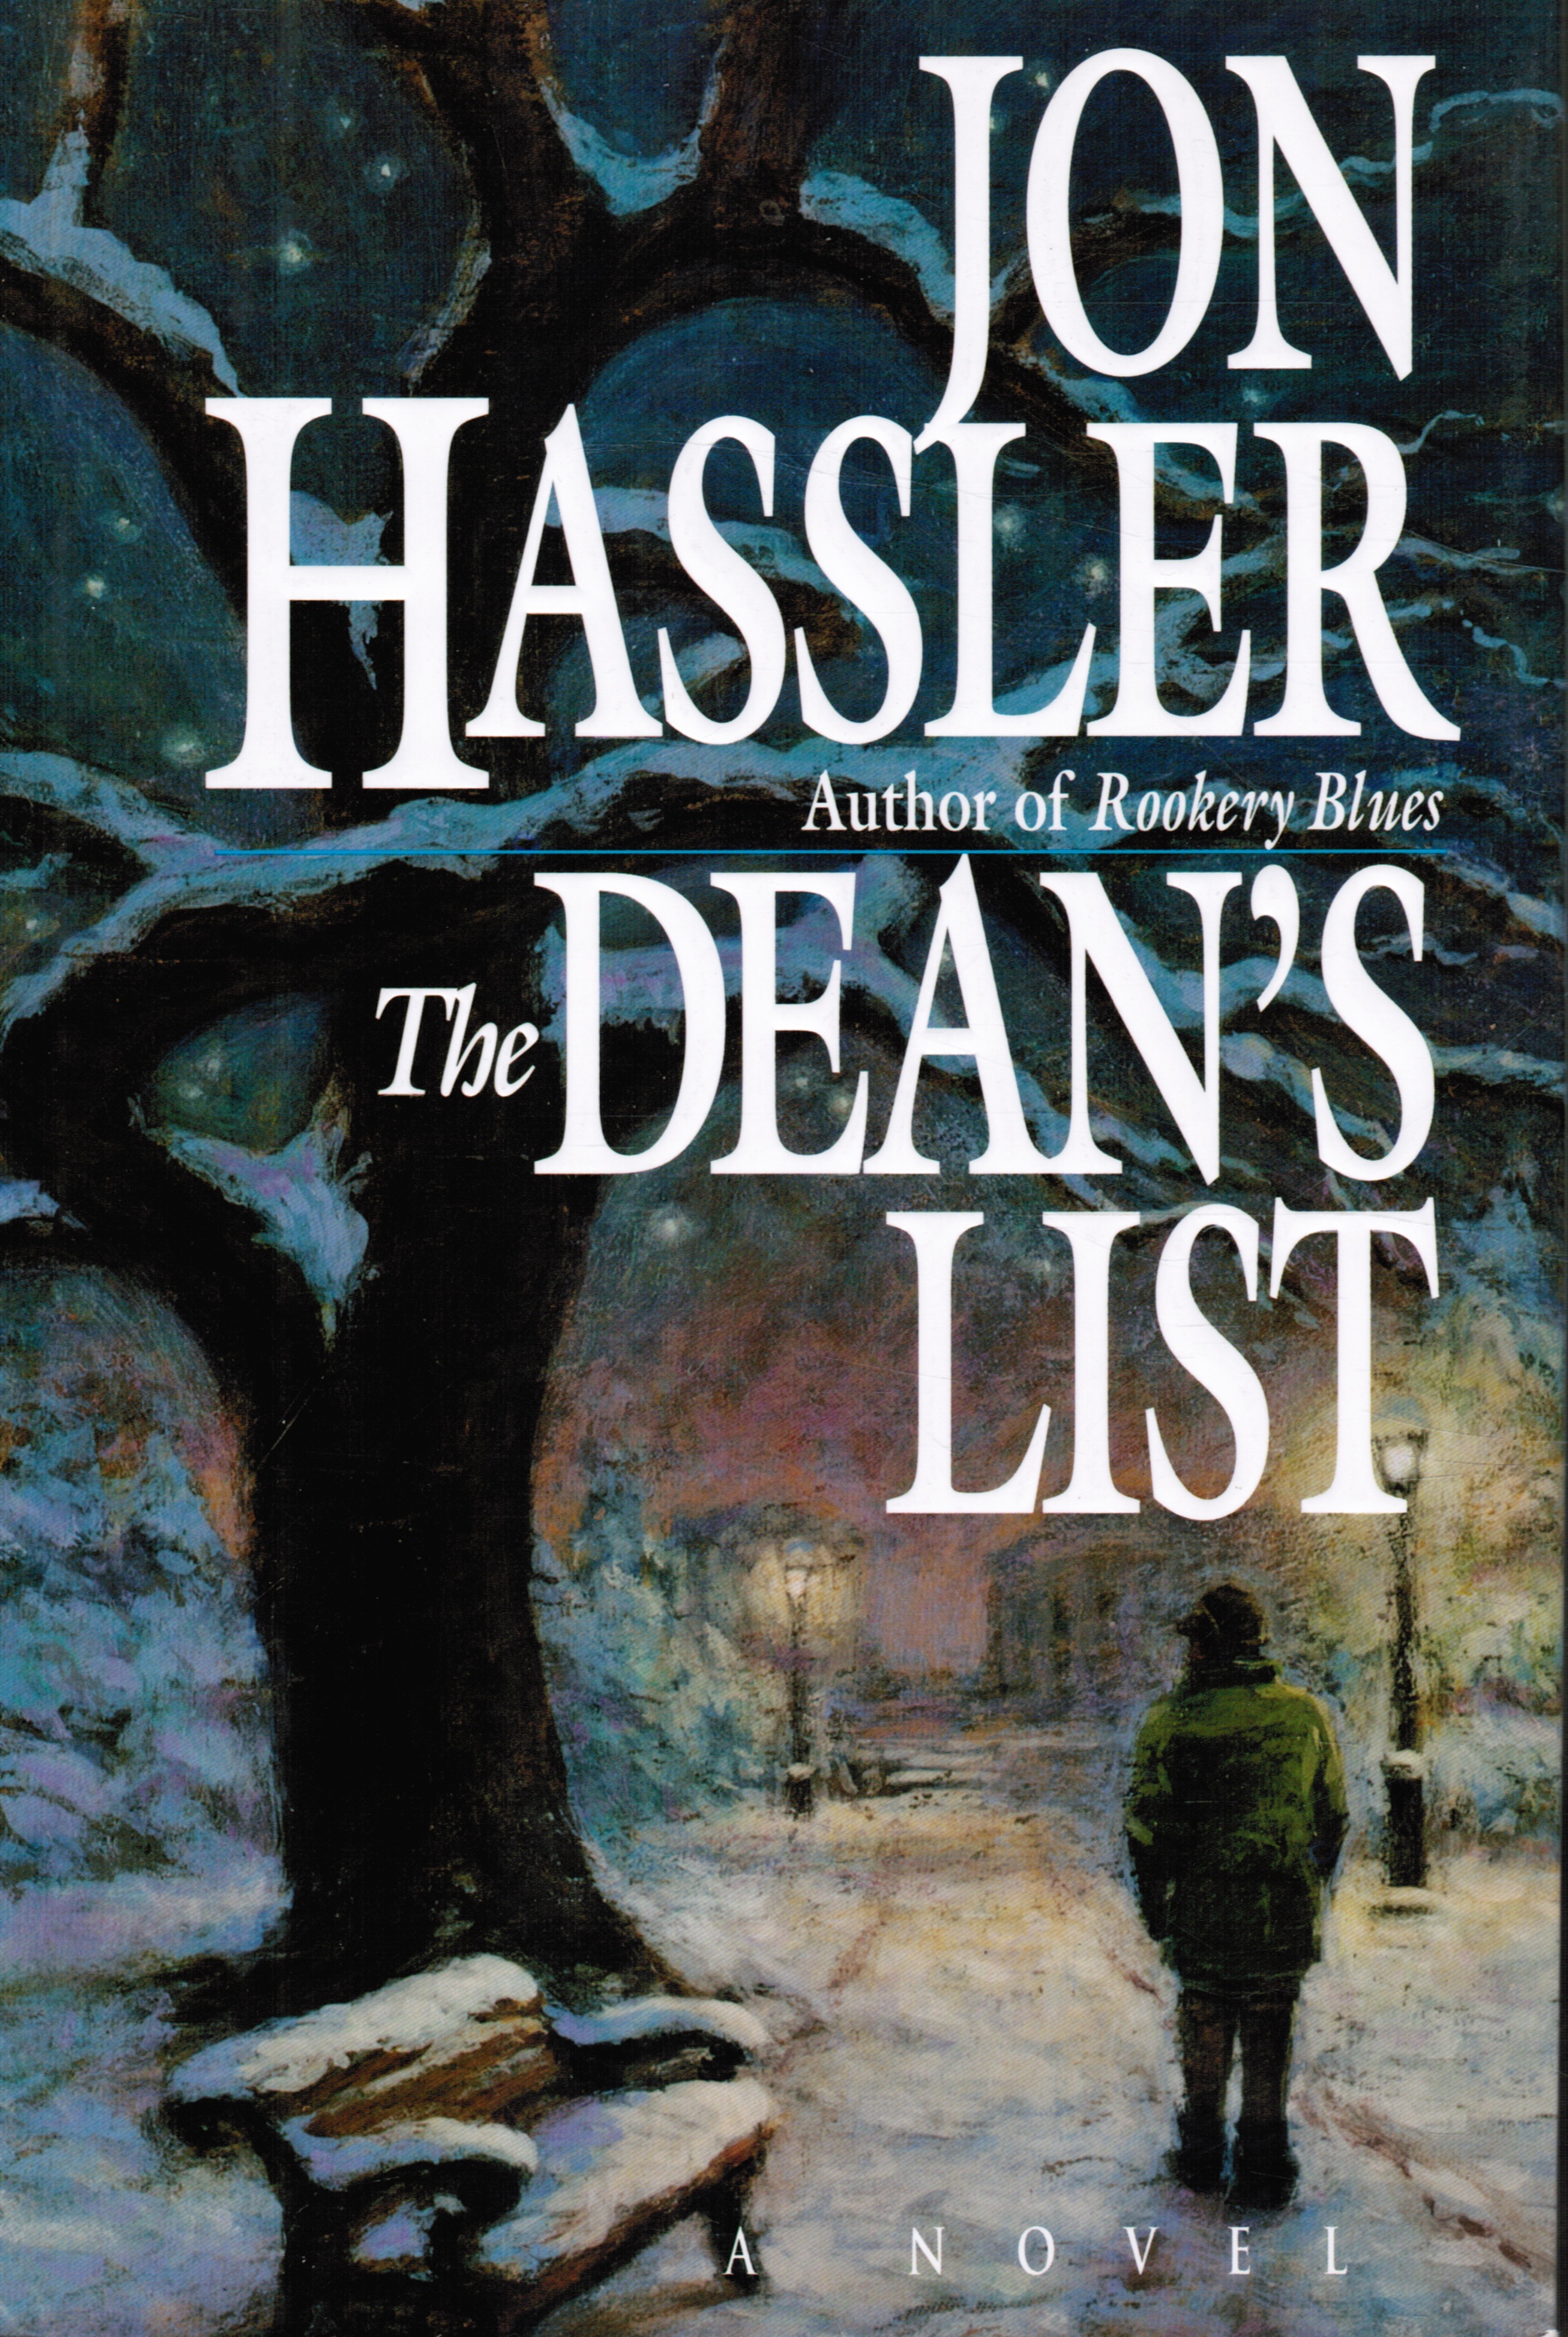 HASSLER, JON - The Dean's List